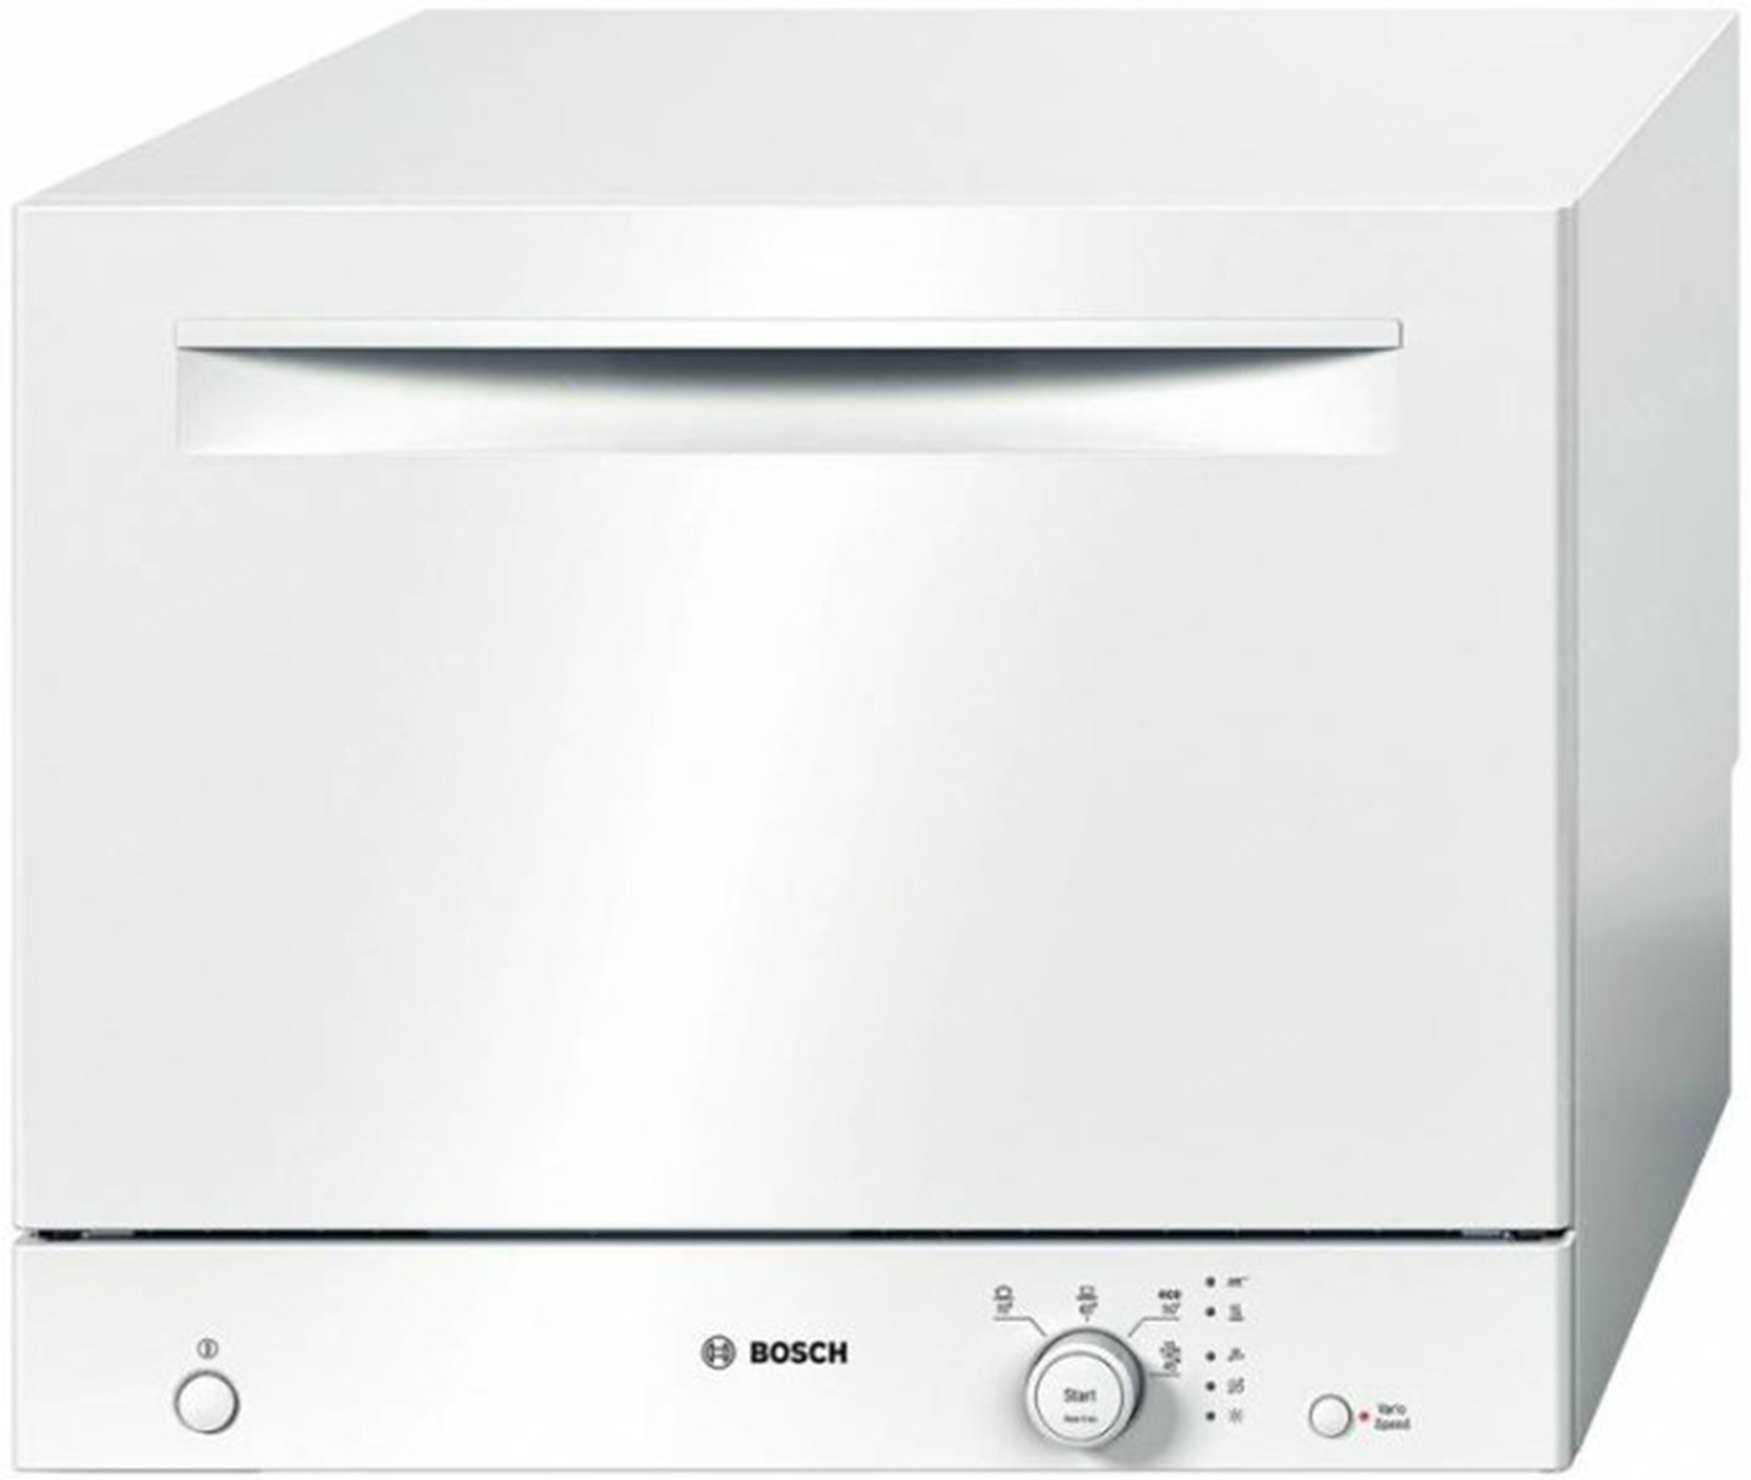 Лучшие посудомоечные машины bosch - рейтинг 2020 (топ 10)